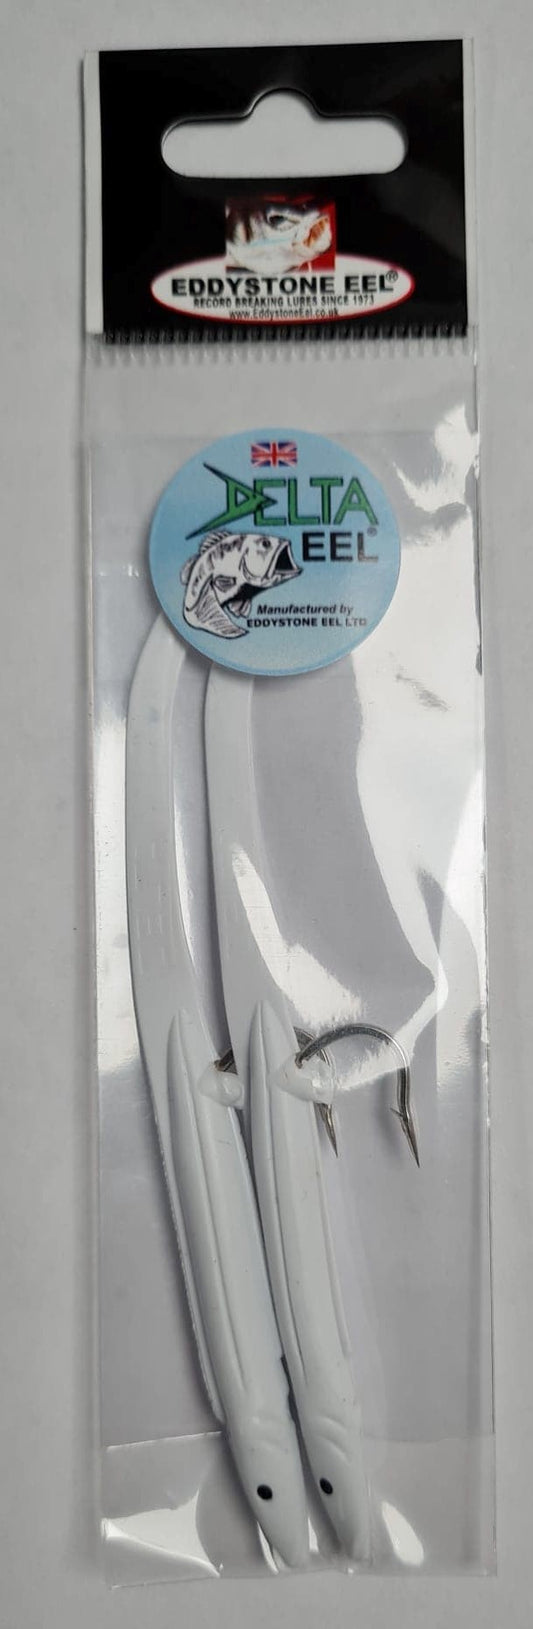 Eddystone Delta Eels No 2 White (2)